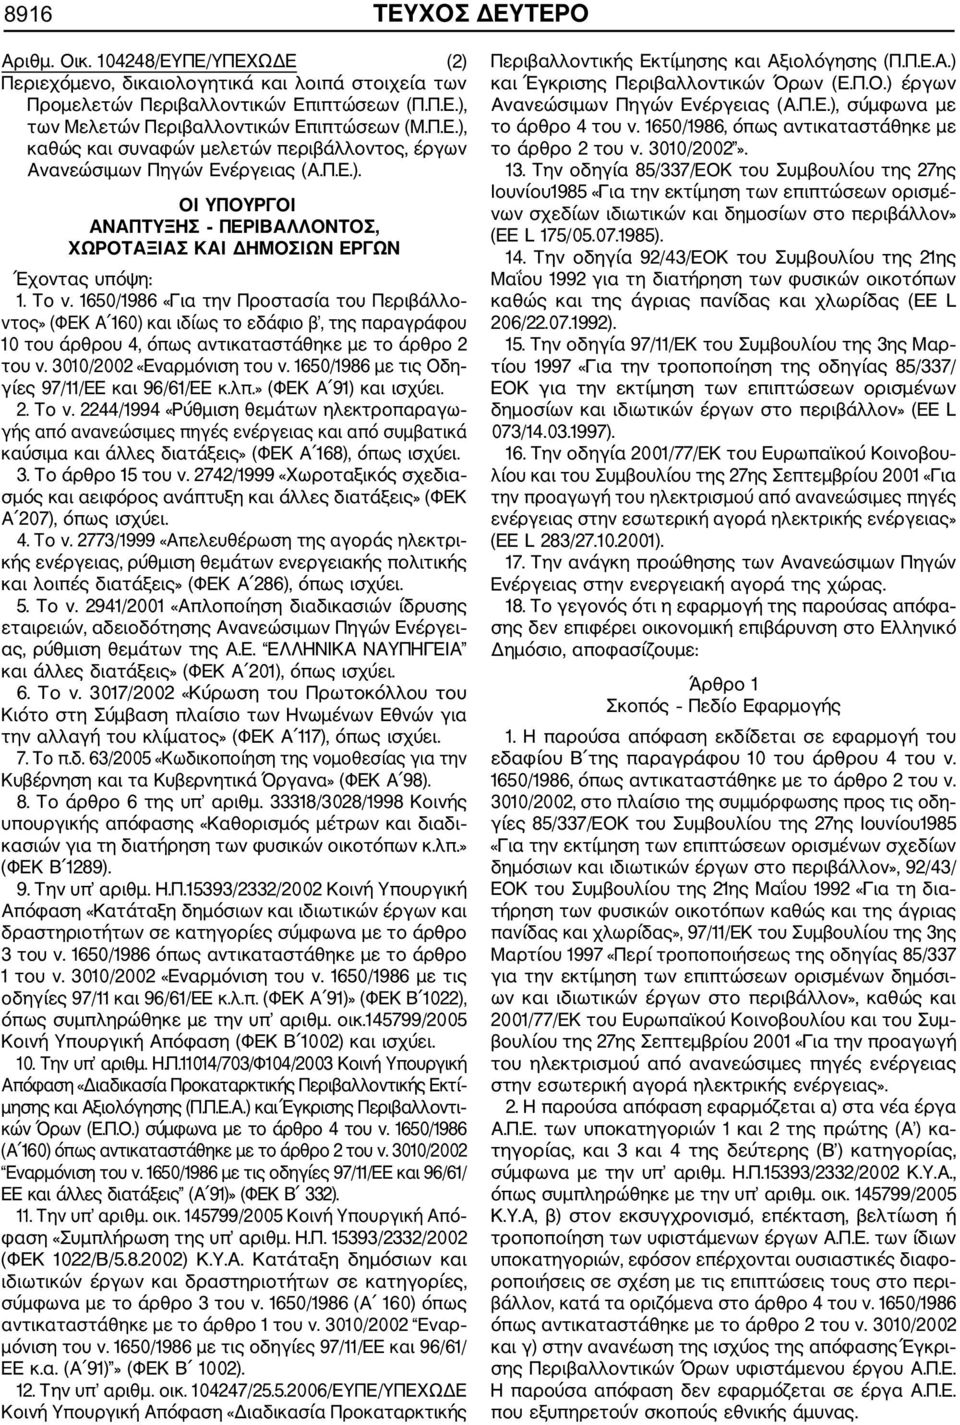 1650/1986 «Για την Προστασία του Περιβάλλο ντος» (ΦΕΚ Α 160) και ιδίως το εδάφιο β, της παραγράφου 10 του άρθρου 4, όπως αντικαταστάθηκε με το άρθρο 2 του ν. 3010/2002 «Εναρμόνιση του ν.